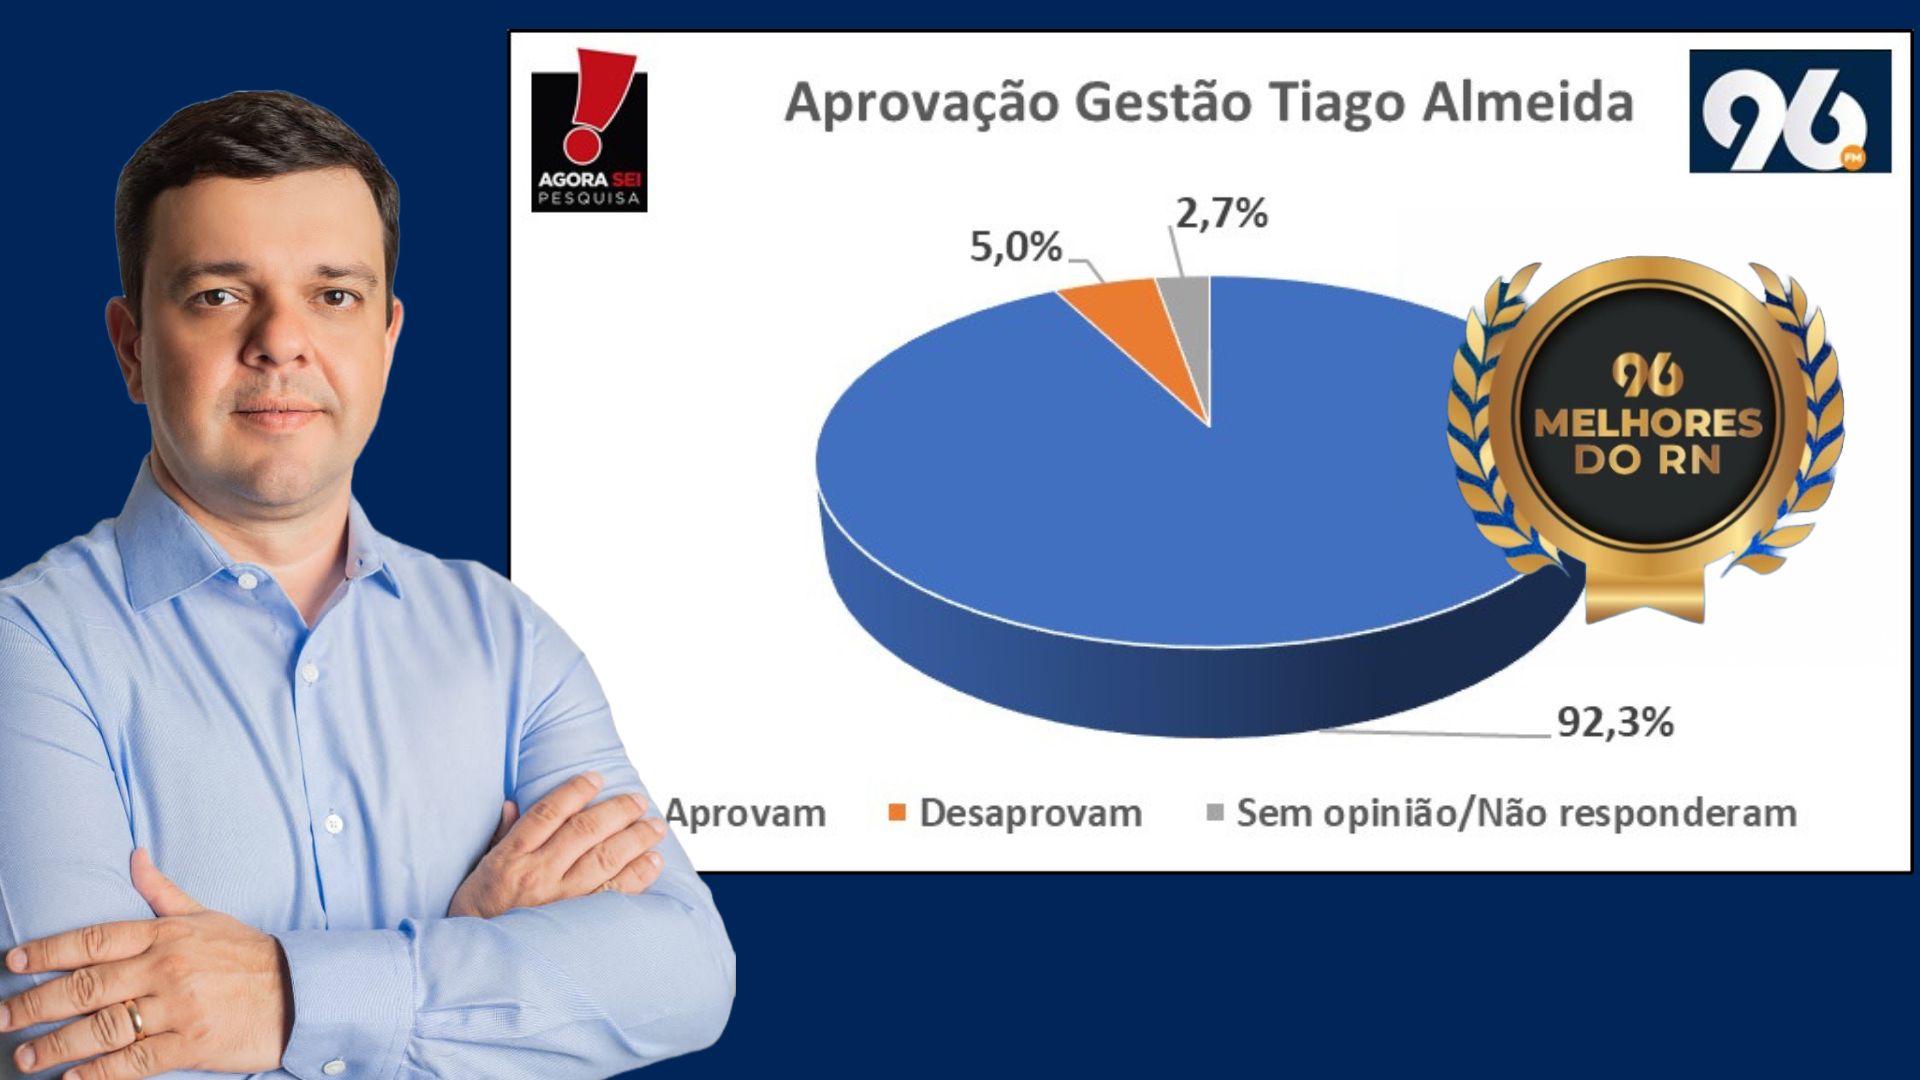 [VIDEO] Os Melhores dos RN: 92,3% dos parelhenses aprovam a Gestão Tiago Almeida